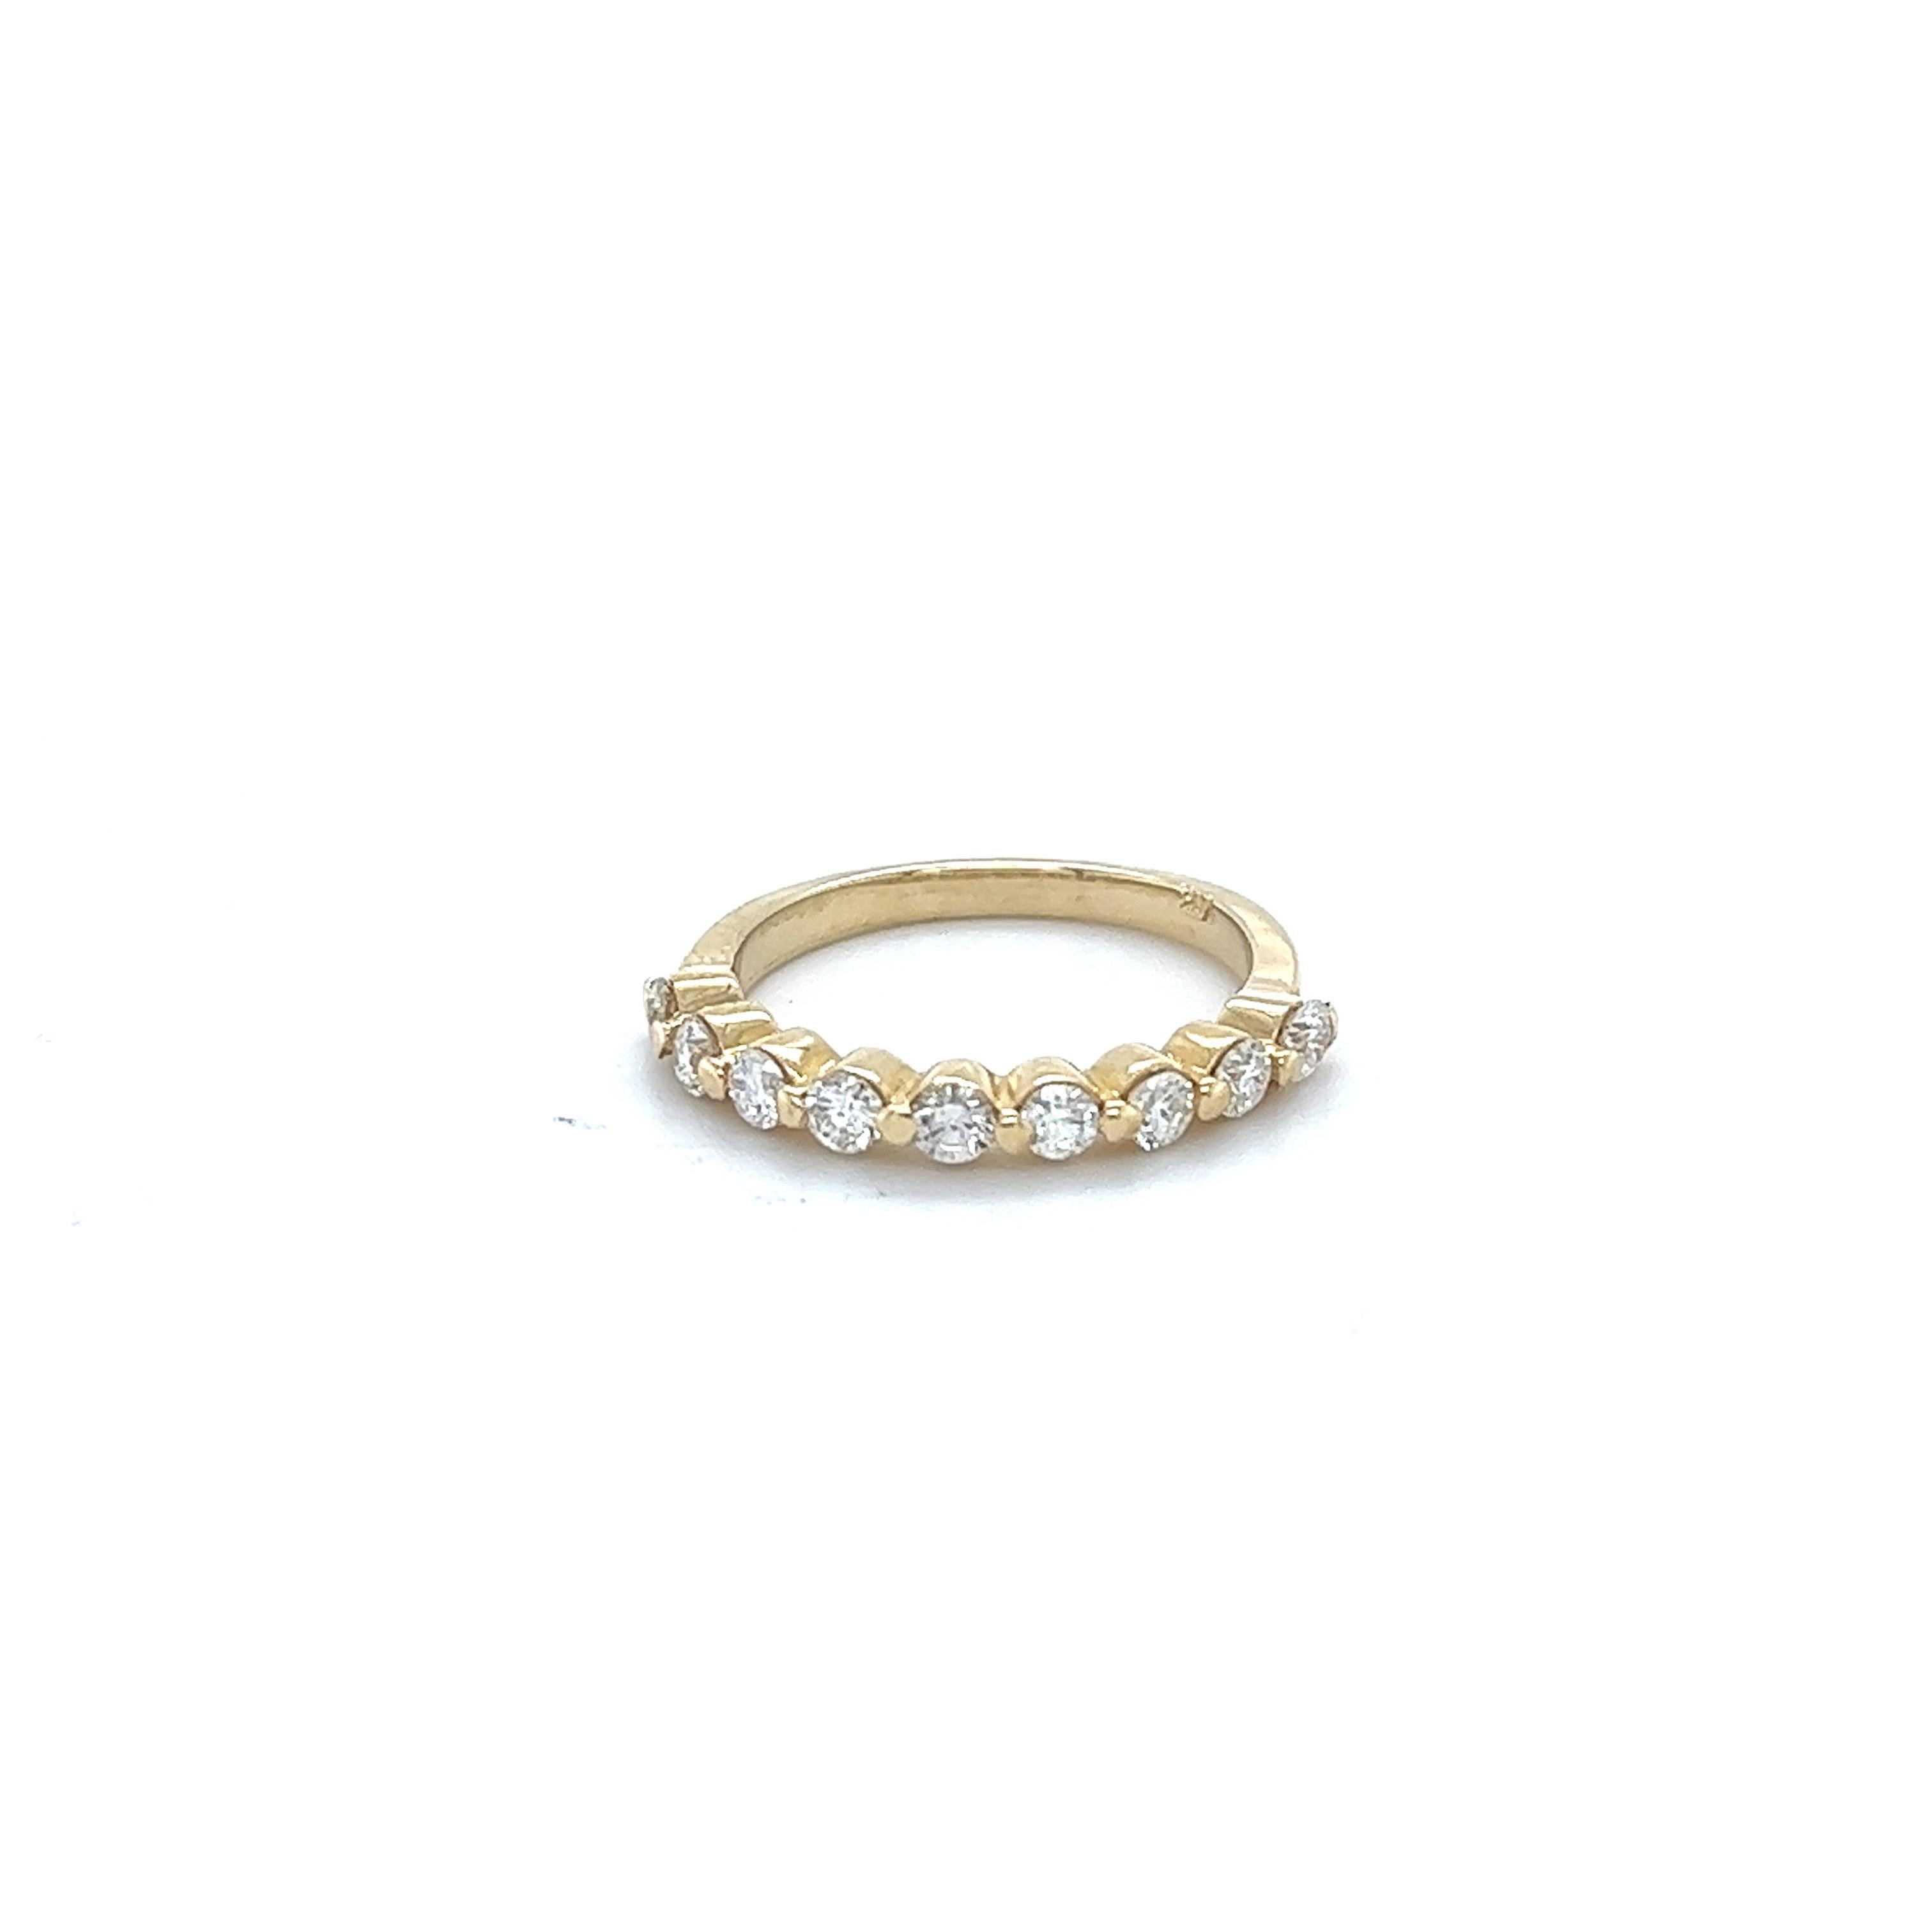 Ein wunderschönes Band, das als einzelnes Band getragen werden kann oder mit anderen Bändern in anderen Goldfarben kombiniert werden kann

Dieser Ring hat 9 Diamanten im Rundschliff mit einem Gewicht von 0,60 Karat. Die Reinheit und Farbe der